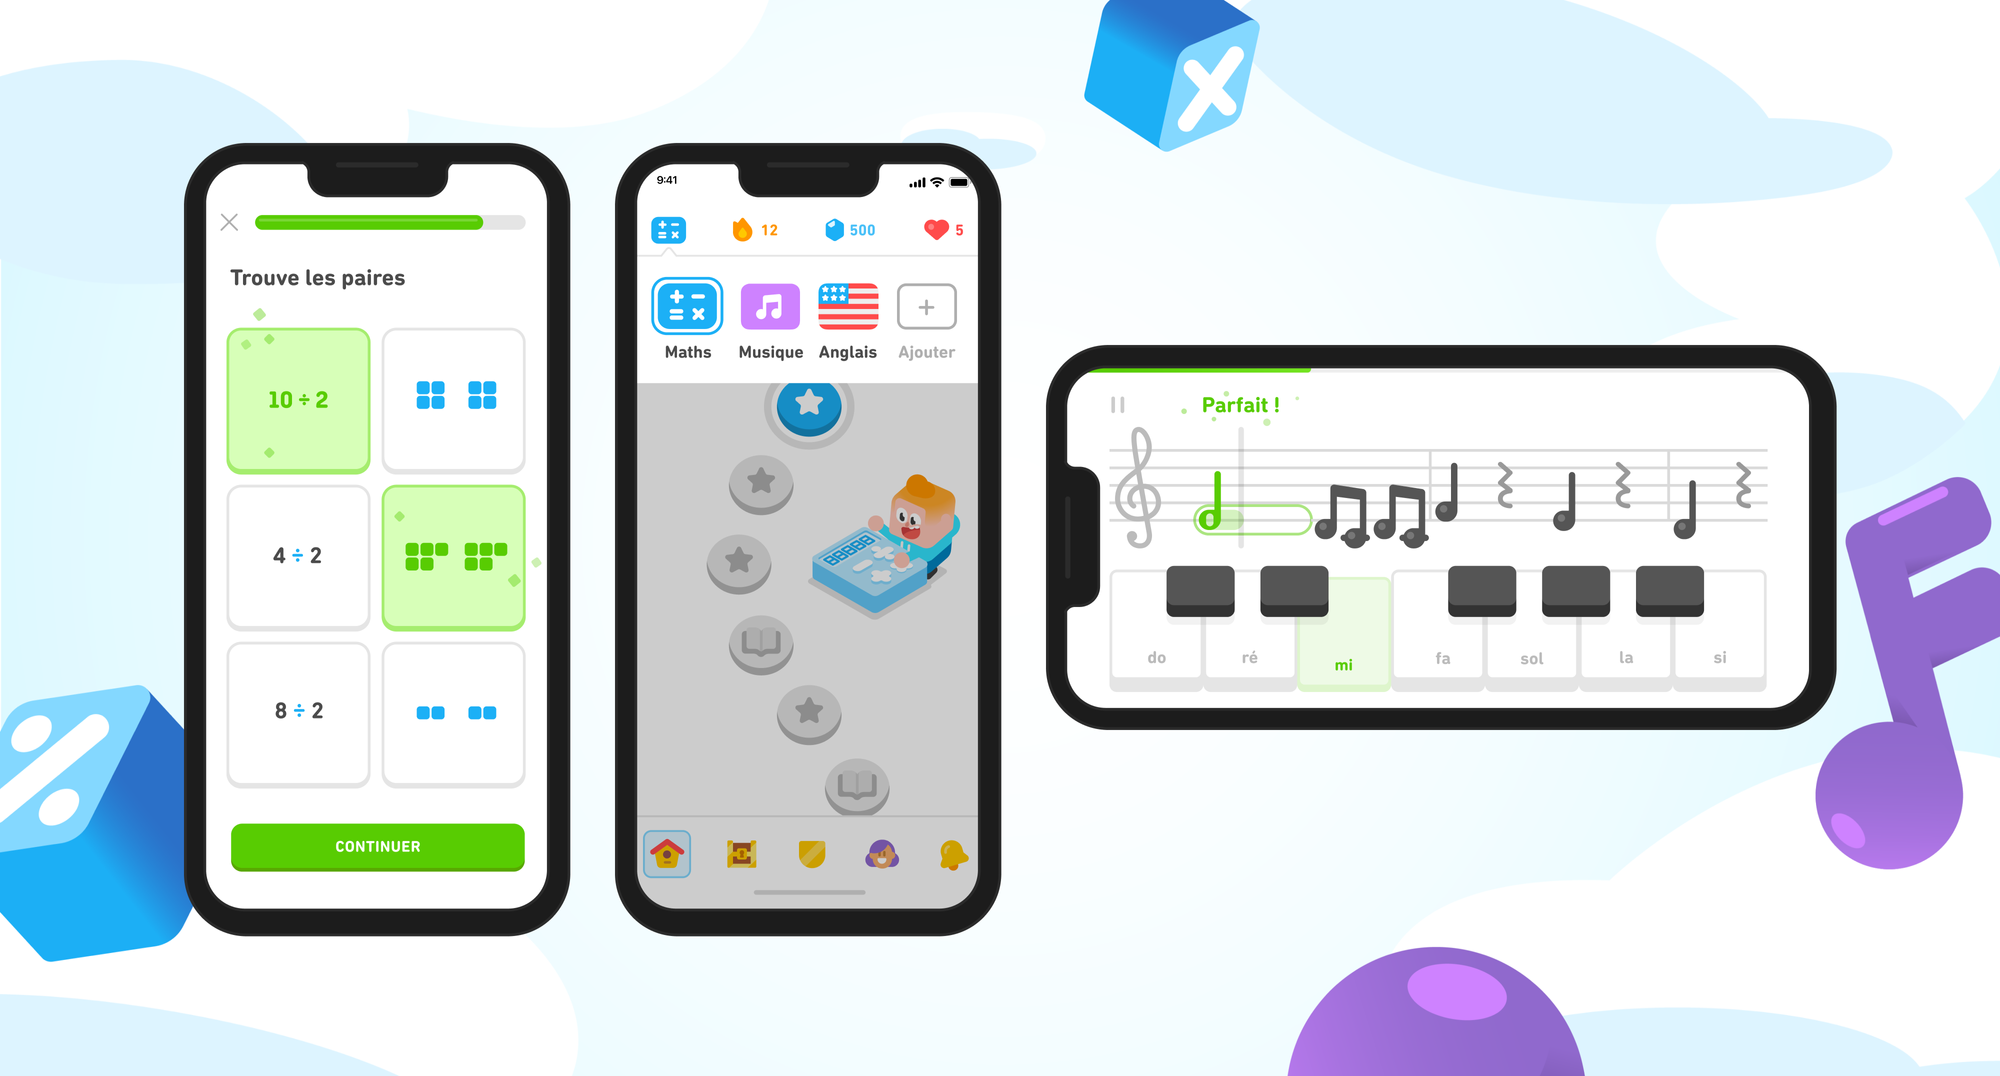 Trois écrans d'iPhone montrant différents éléments de la nouvelle expérience Duolingo. Le premier écran montre une leçon de maths où l’utilisateur doit trouver des paires avec d’un côté des divisions et de l’autre des blocs de cubes. Le deuxième écran montre le sélecteur de cours, avec les icônes des cours de maths et de musique à côté du drapeau du cours d’anglais. Le troisième écran montre un iPhone orienté horizontalement avec un clavier et une portée de notes, et l’on comprend que l’utilisateur joue sur le clavier au fur et à mesure que les notes avancent sur l'écran.